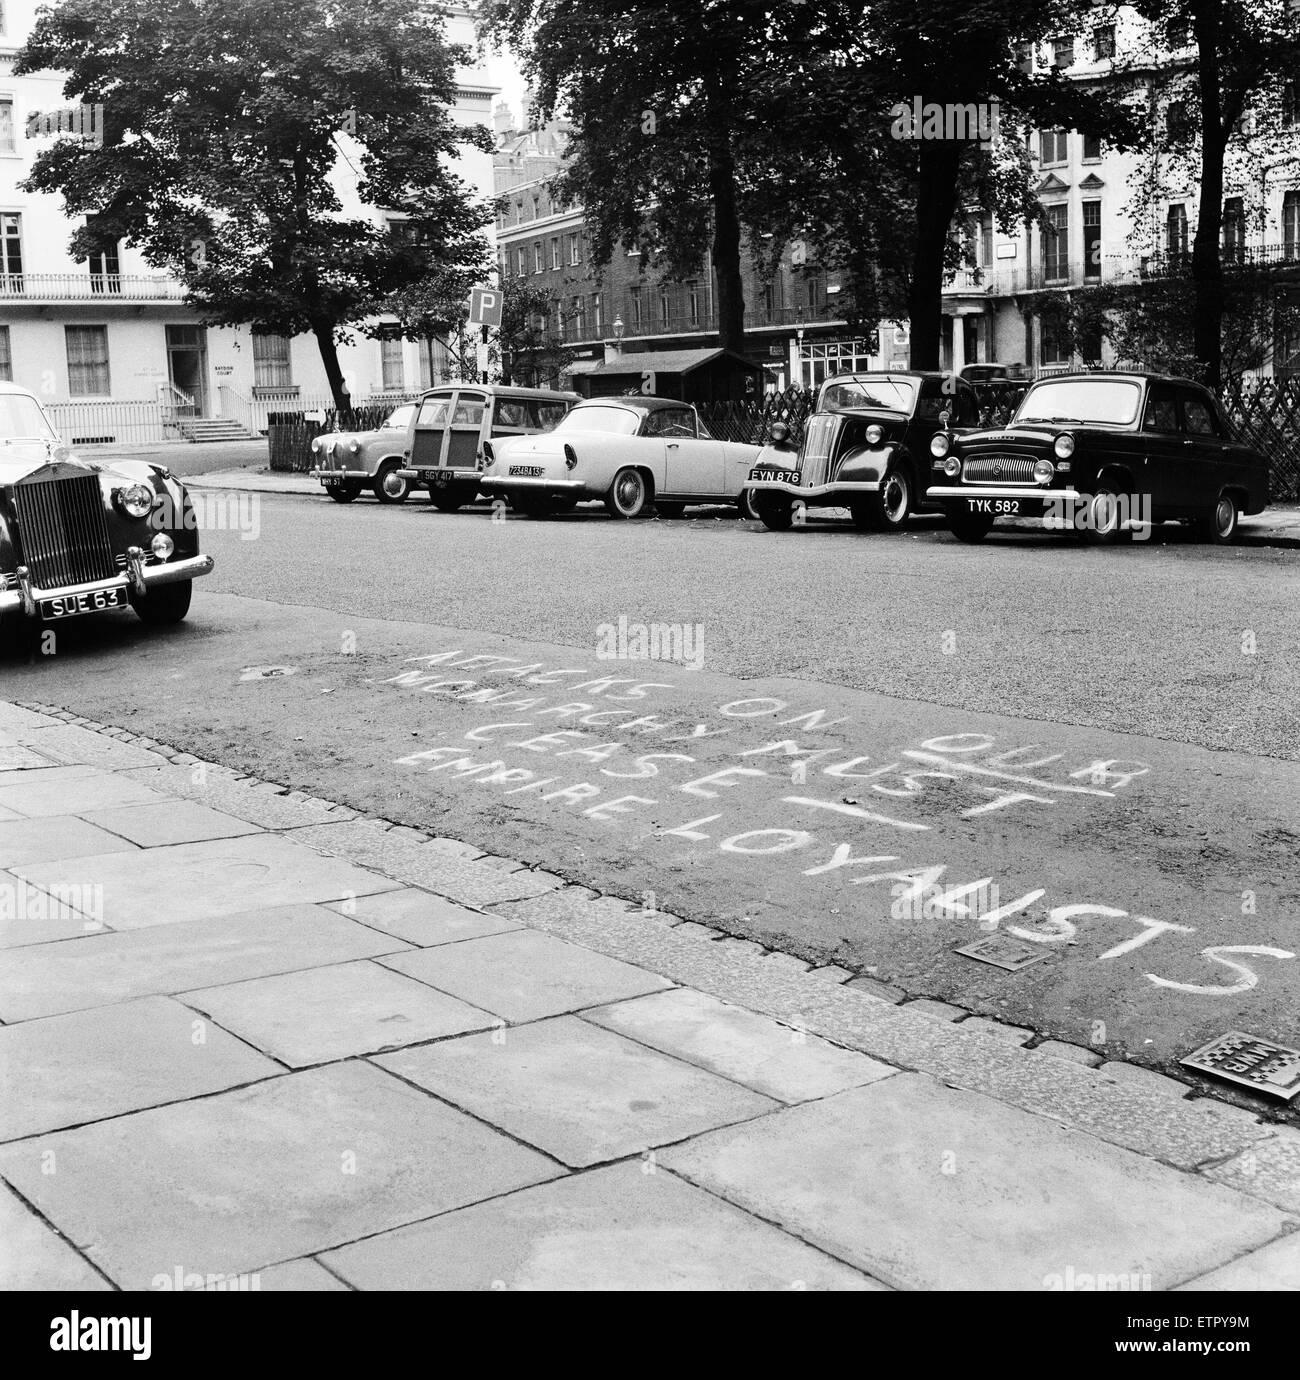 Empire lealisti slogan di vernice sulle case del Queen's critici. Il 18 agosto 1957. Foto Stock